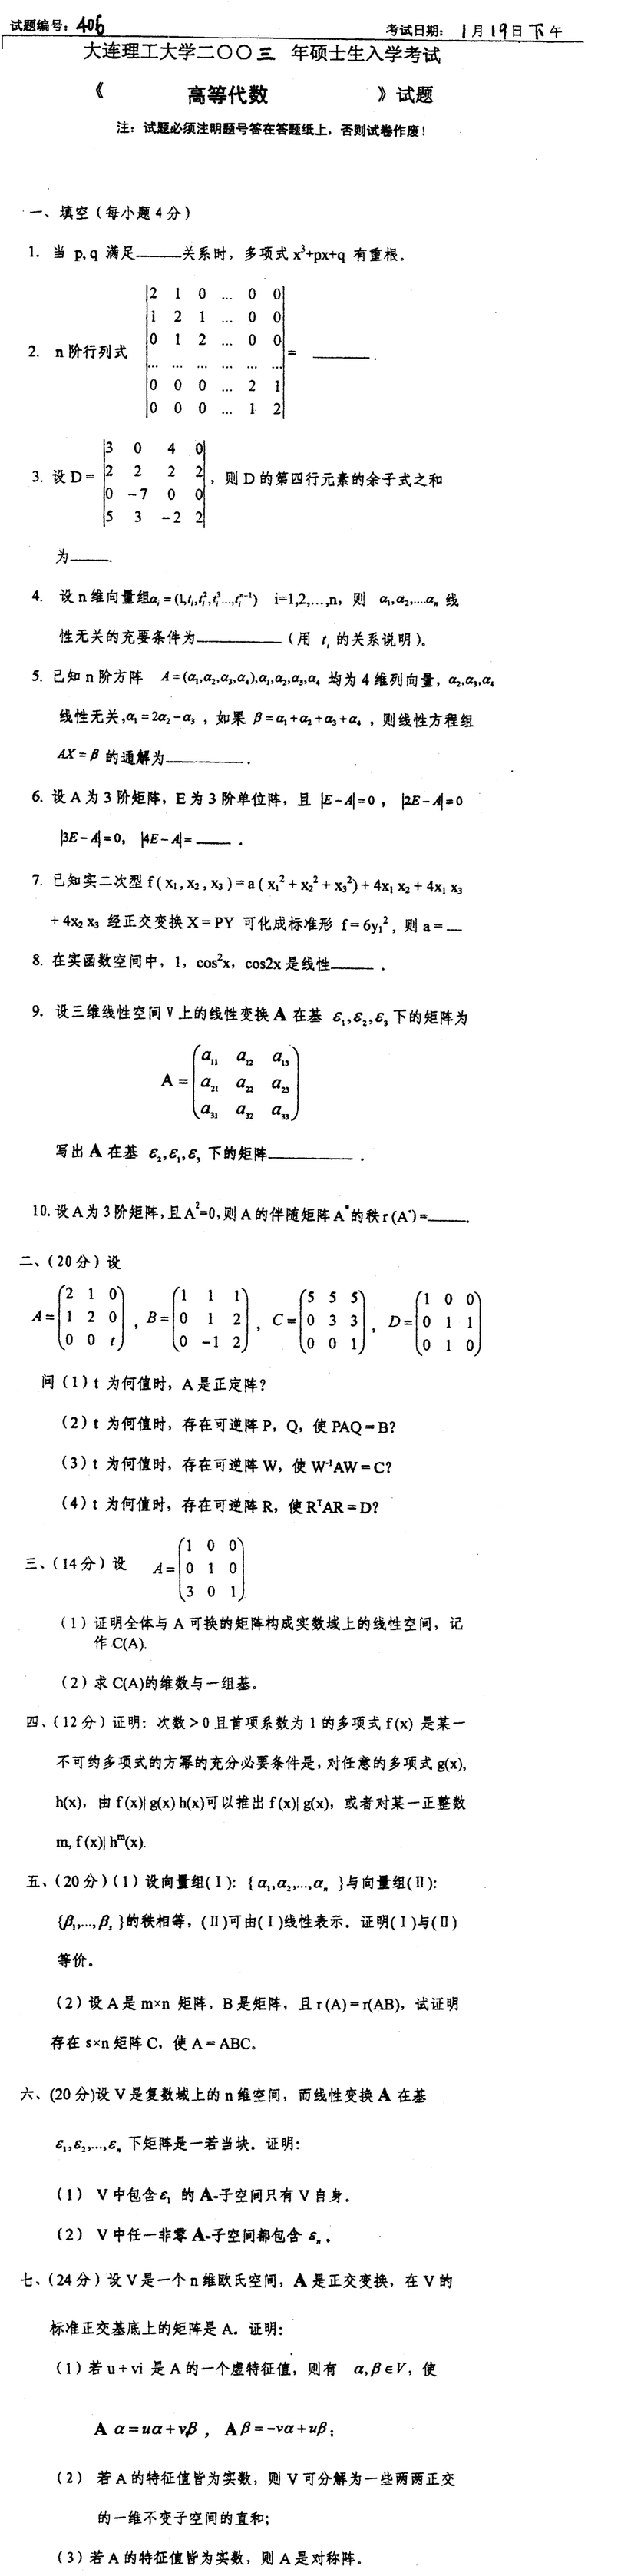 2003大连理工大学考研数学真题（高等代数）.png